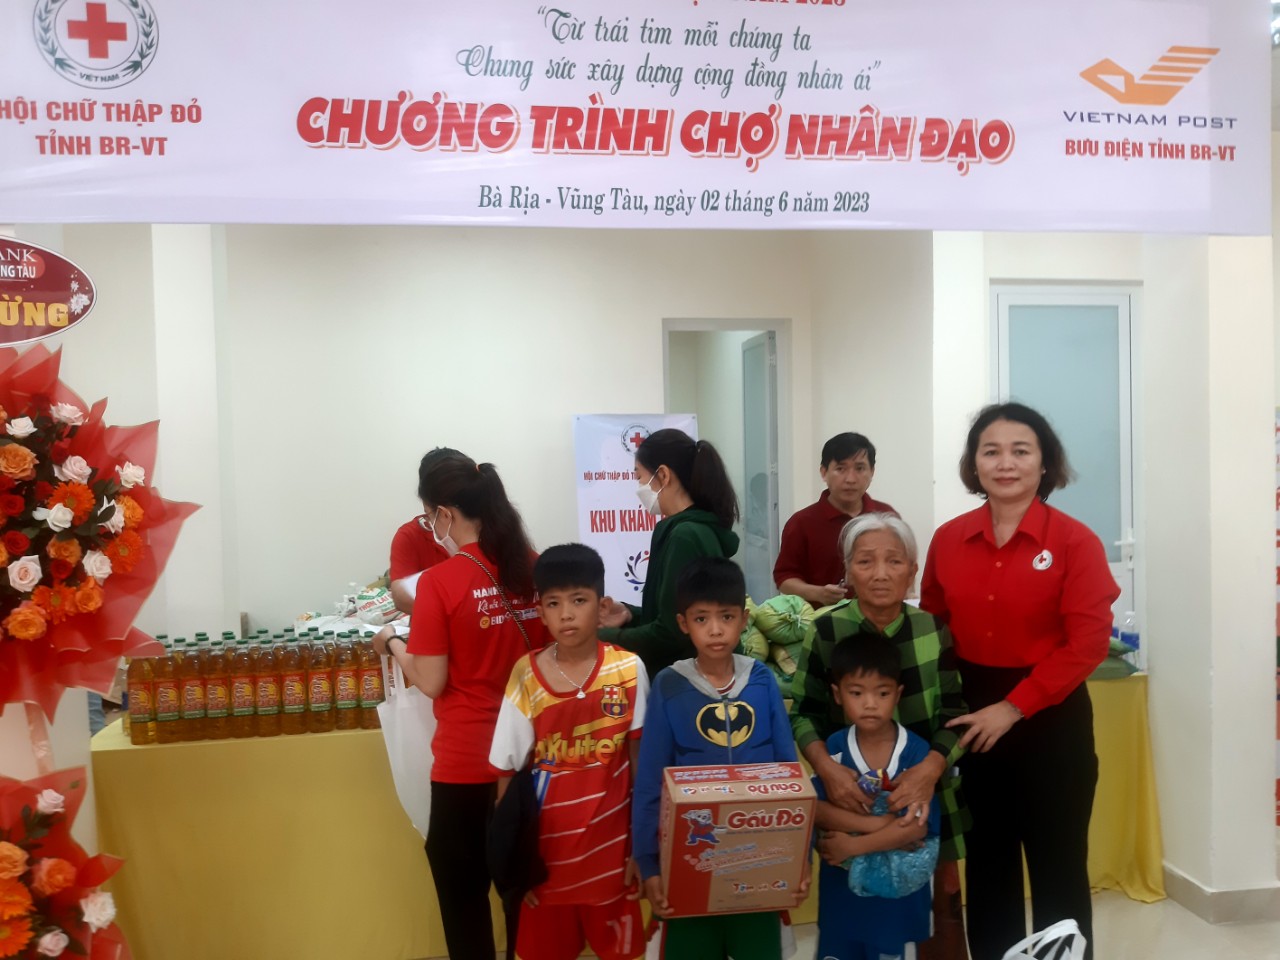 Hội Chữ thập đỏ tỉnh Bà Rịa - Vũng Tàu tổ chức “Chợ Nhân đạo” tại Bưu điện tỉnh Bà Rịa - Vũng Tàu - Ảnh 4.